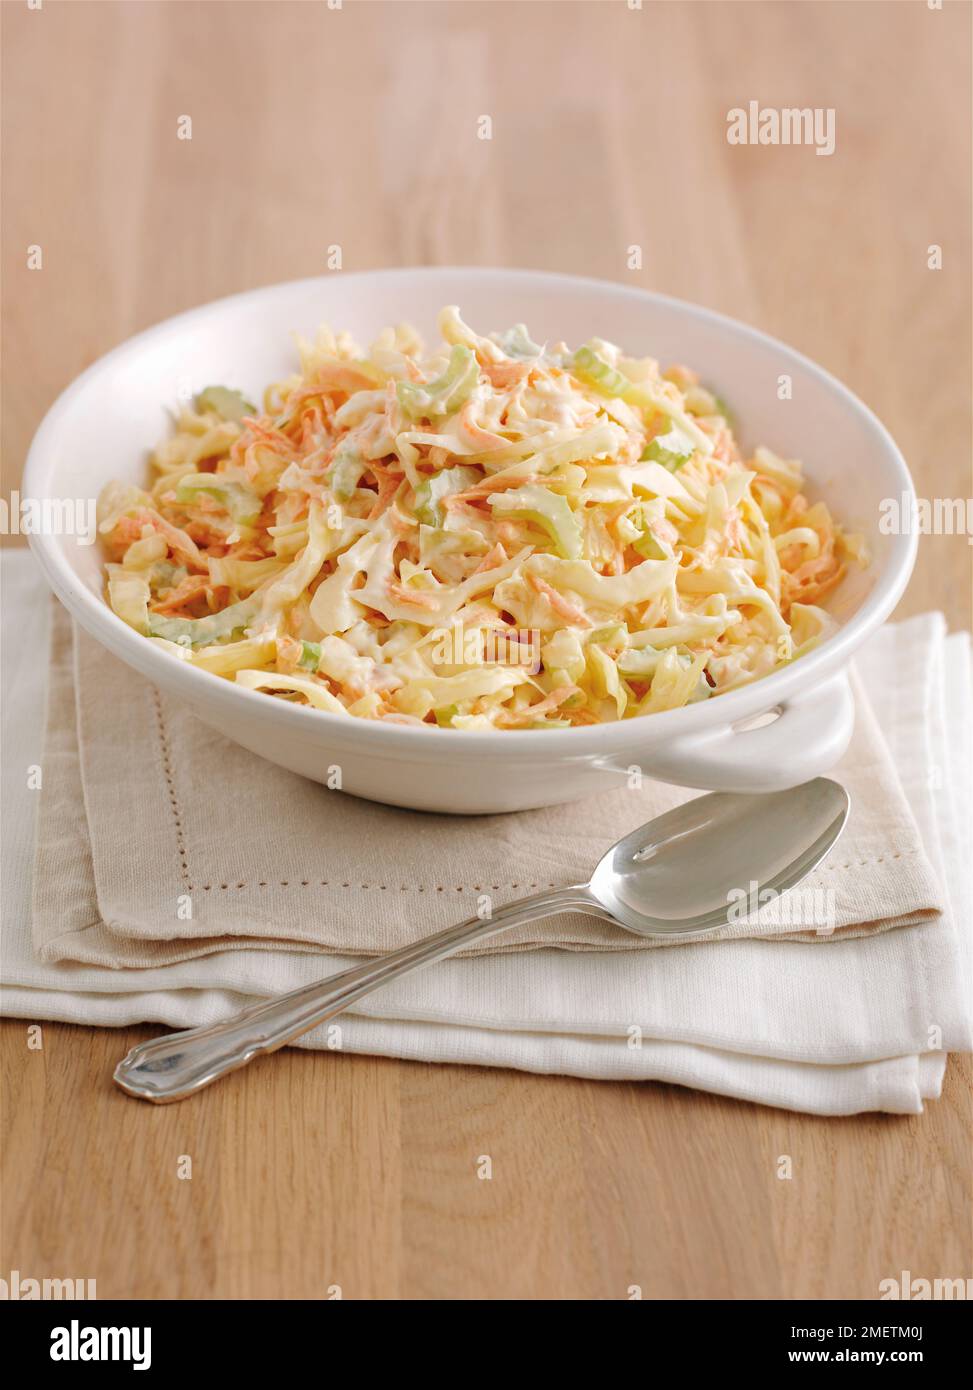 Ciotola di coleslaw su mucchio di tovaglioli, cucchiaio vicino a ciotola Foto Stock